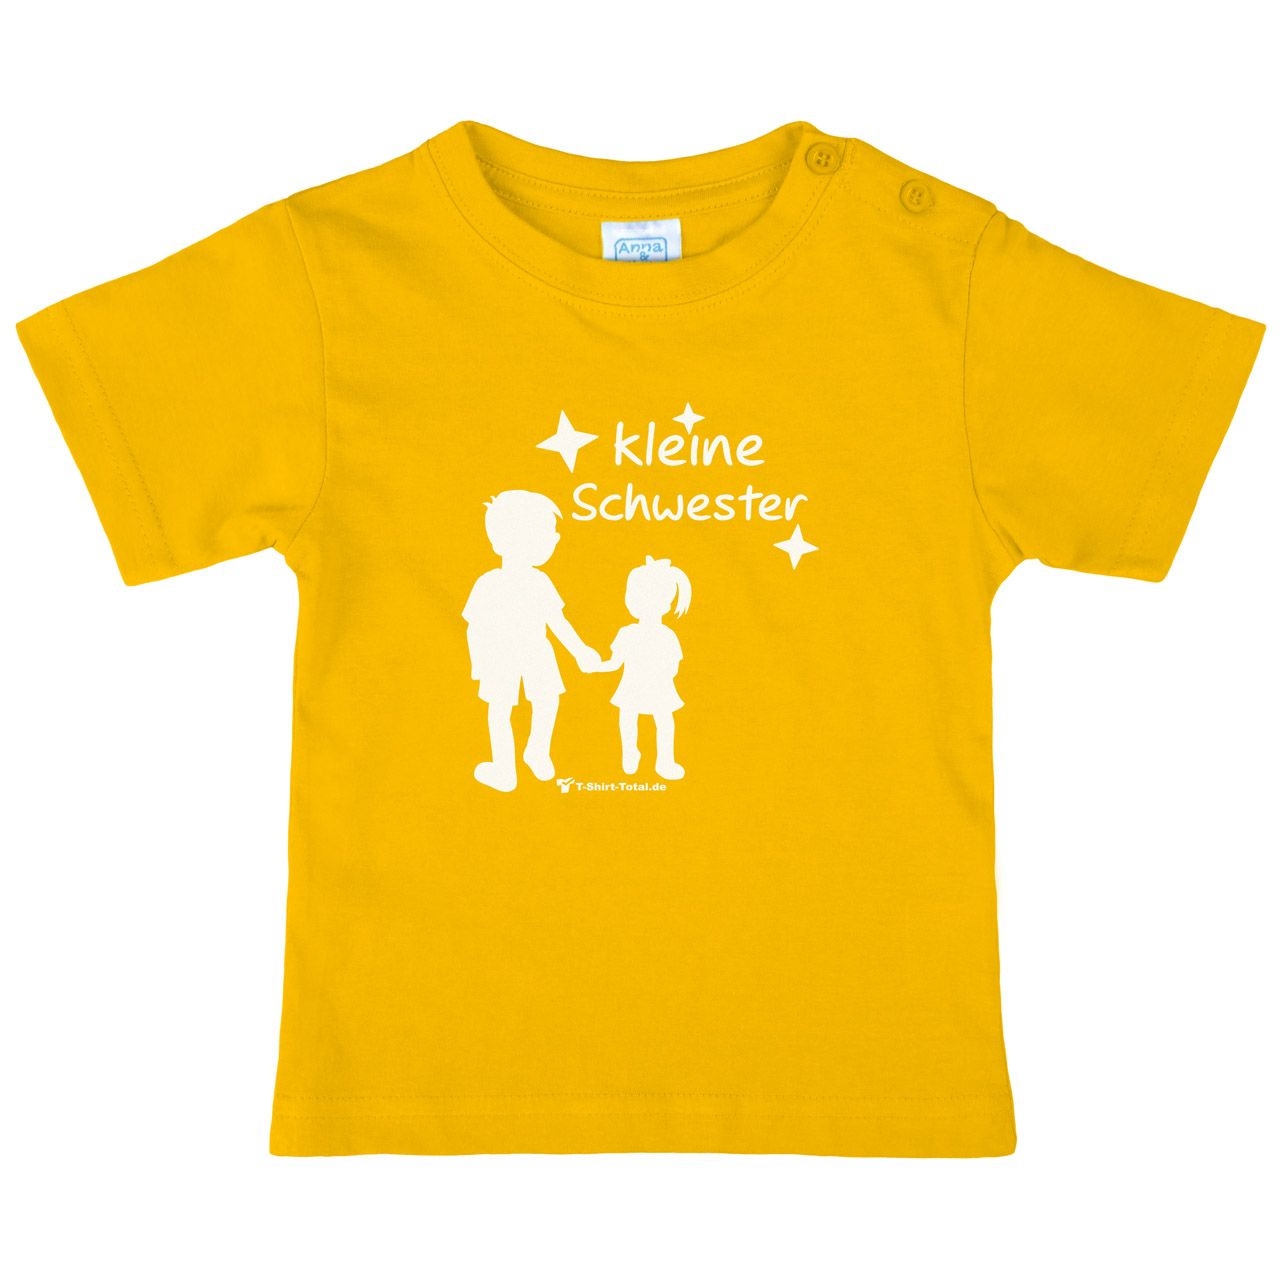 Kleine Schwester JM Kinder T-Shirt gelb 68 / 74